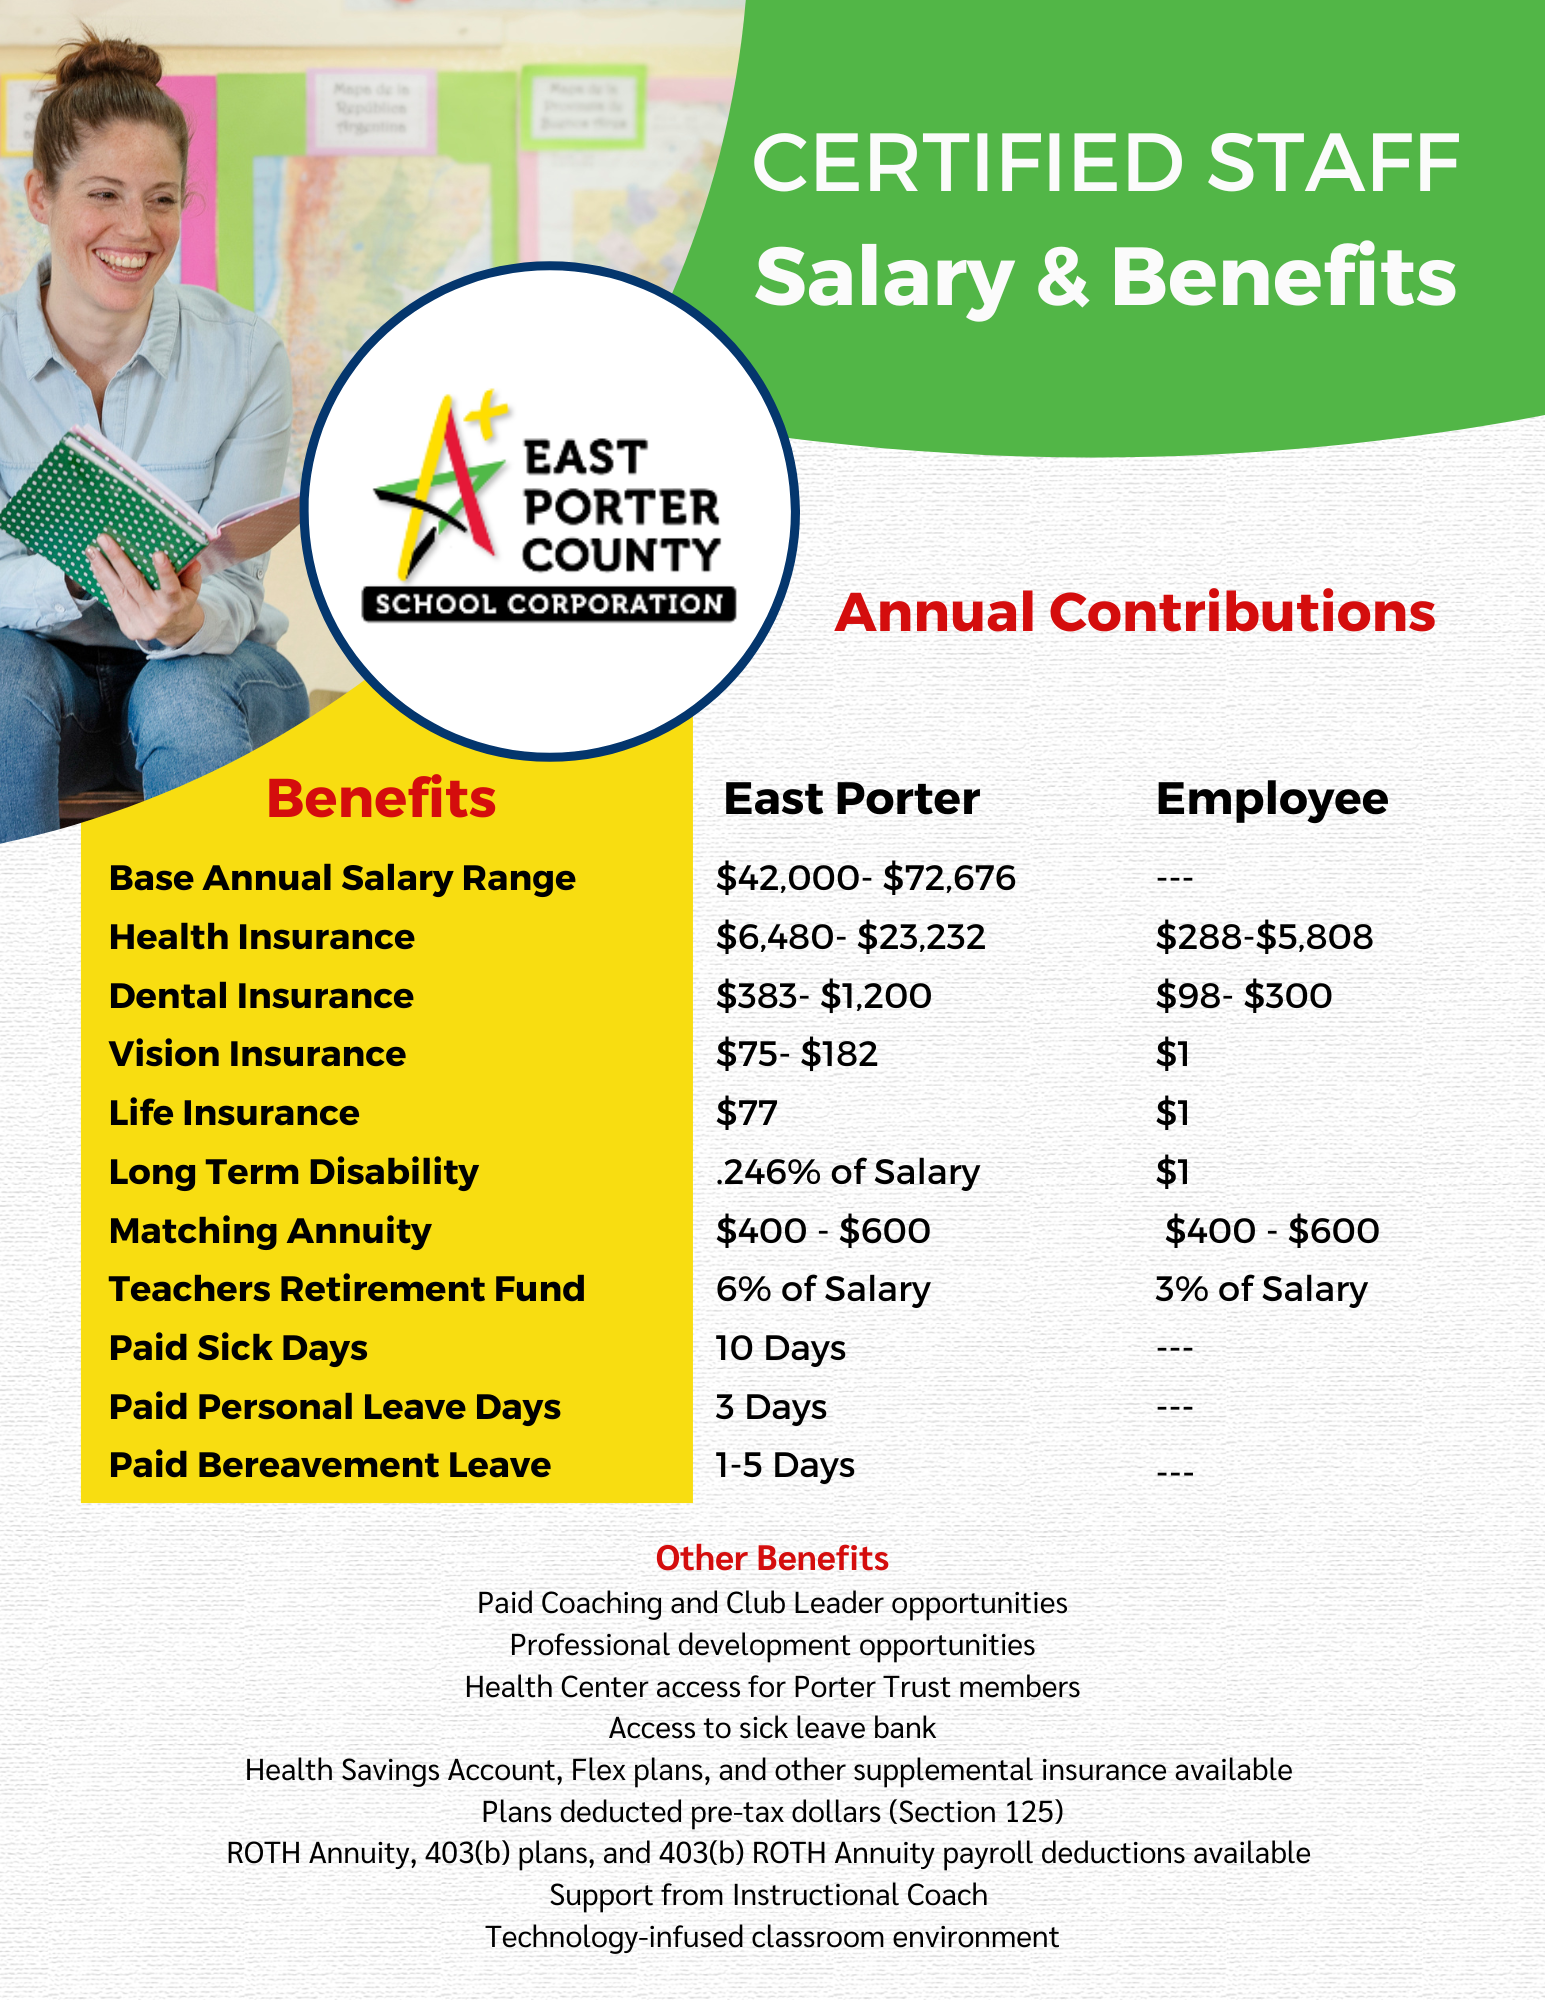 Benefits flyer info